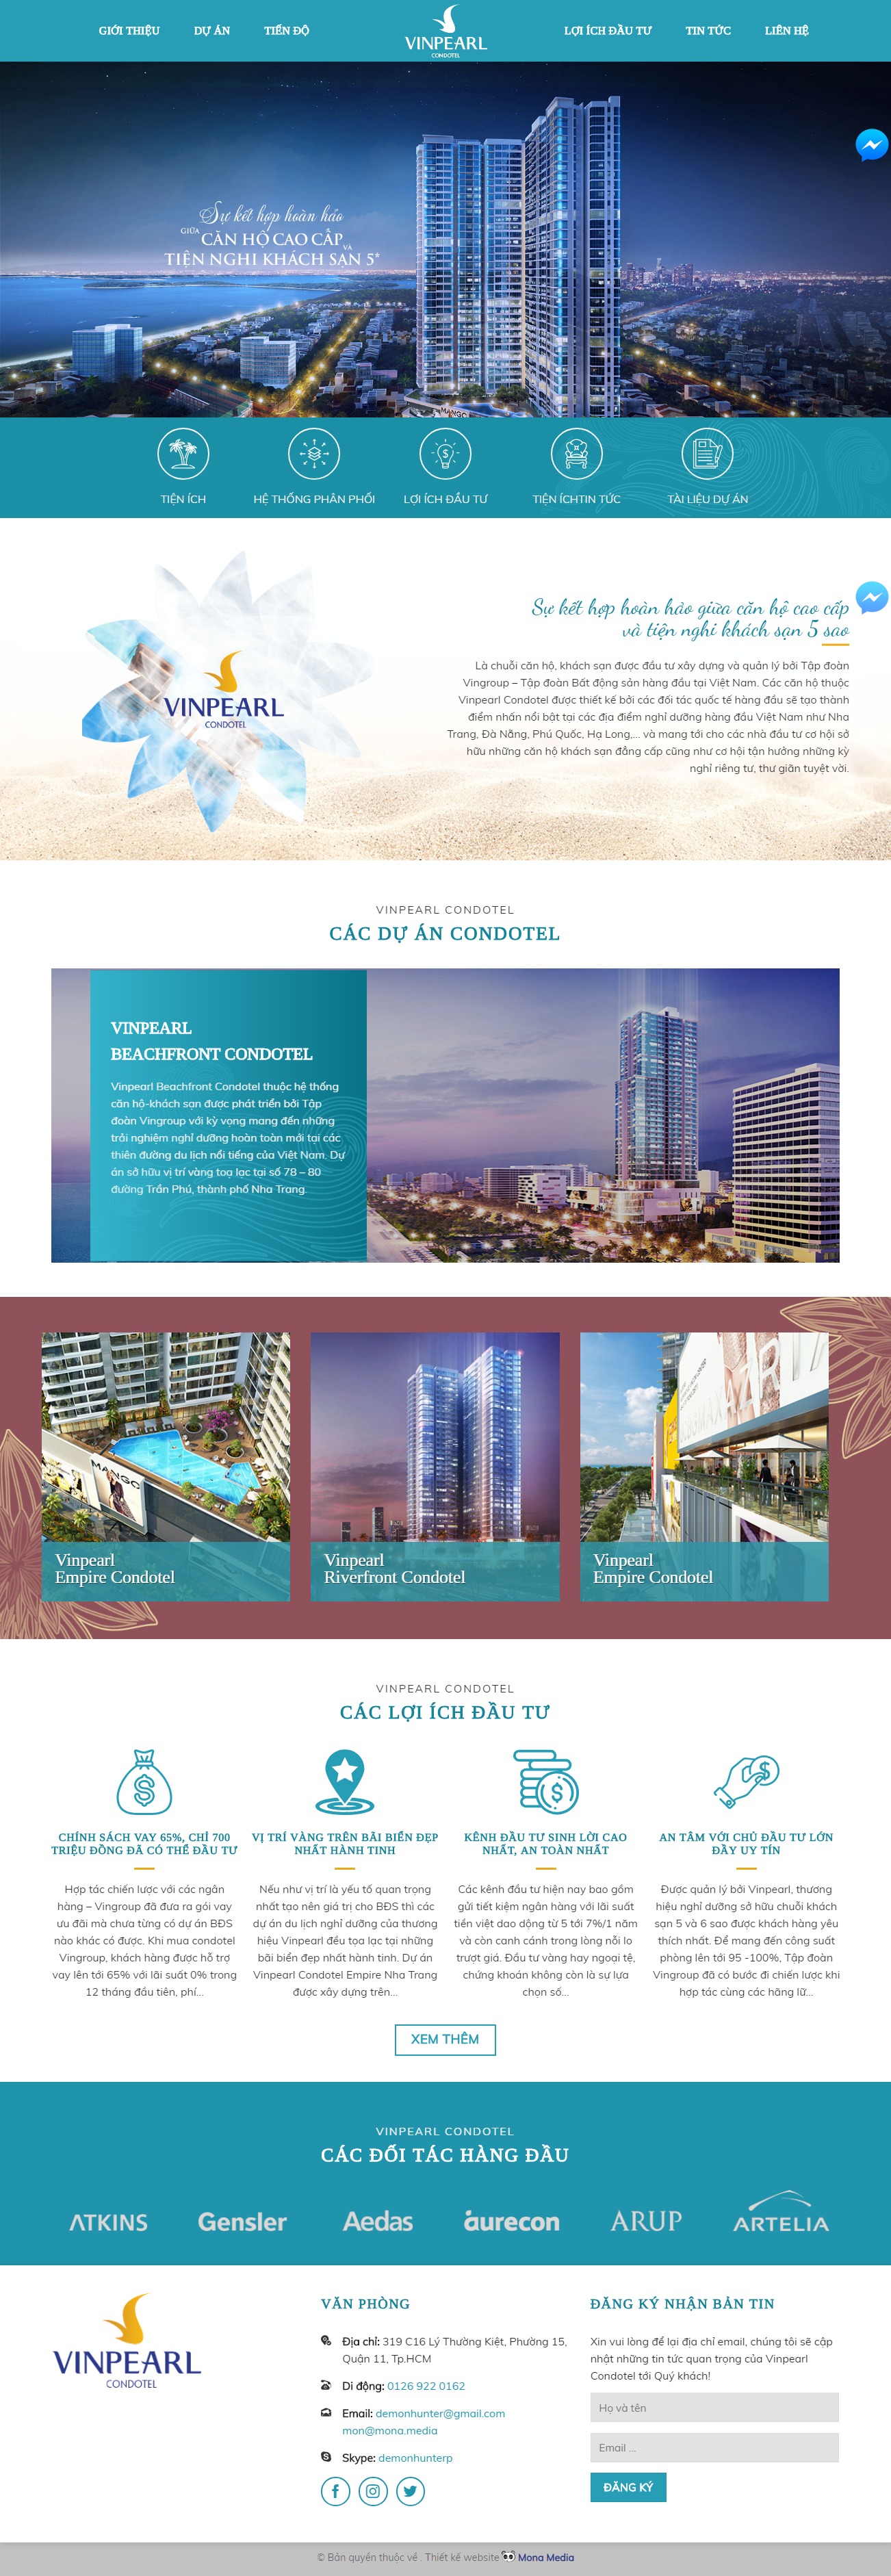 Mẫu website giới thiệu bất động sản tương tự Vinpearl Condotel